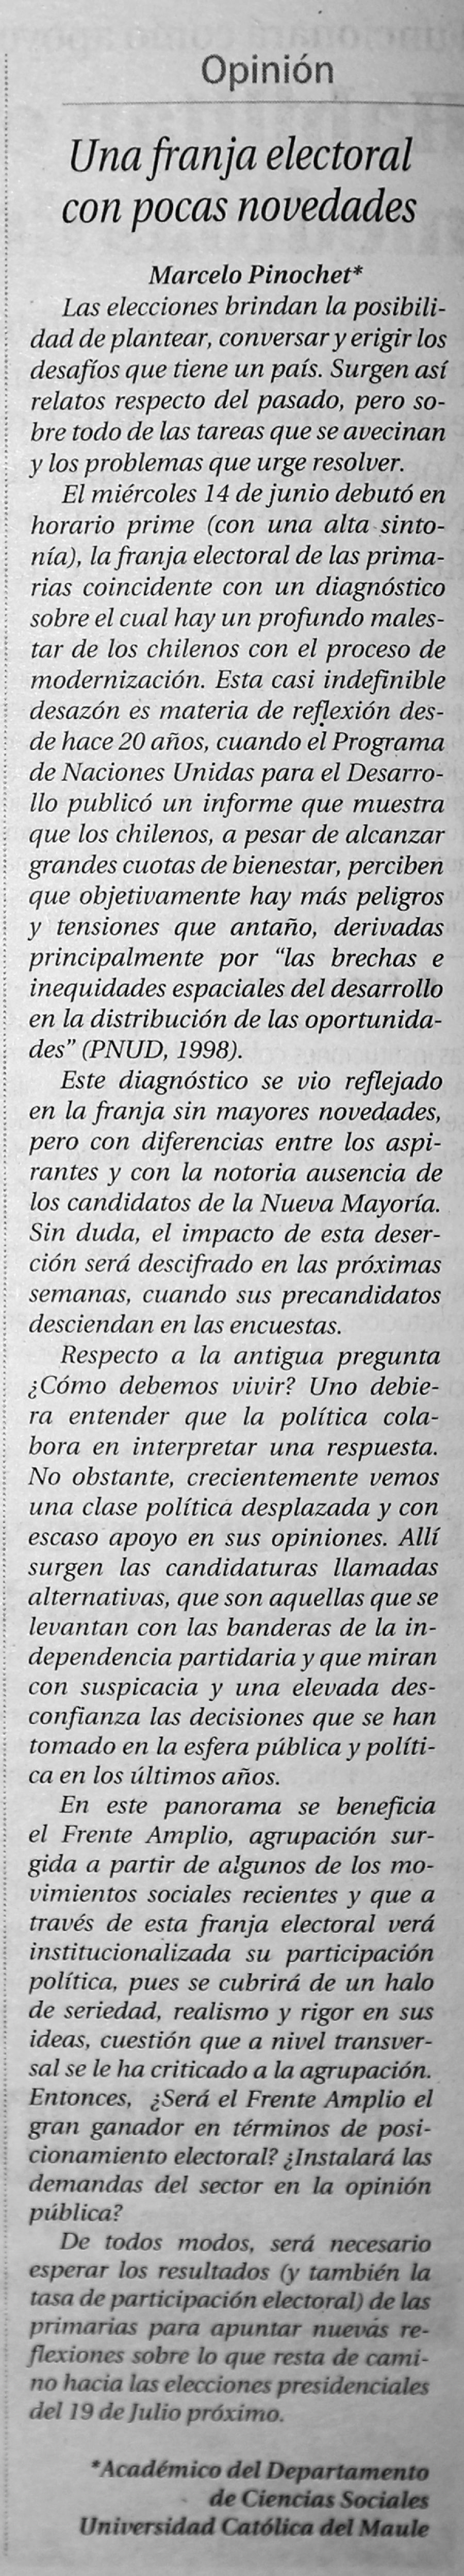 19 de junio en Diario El Centro: “Una franja electoral con pocas novedades”